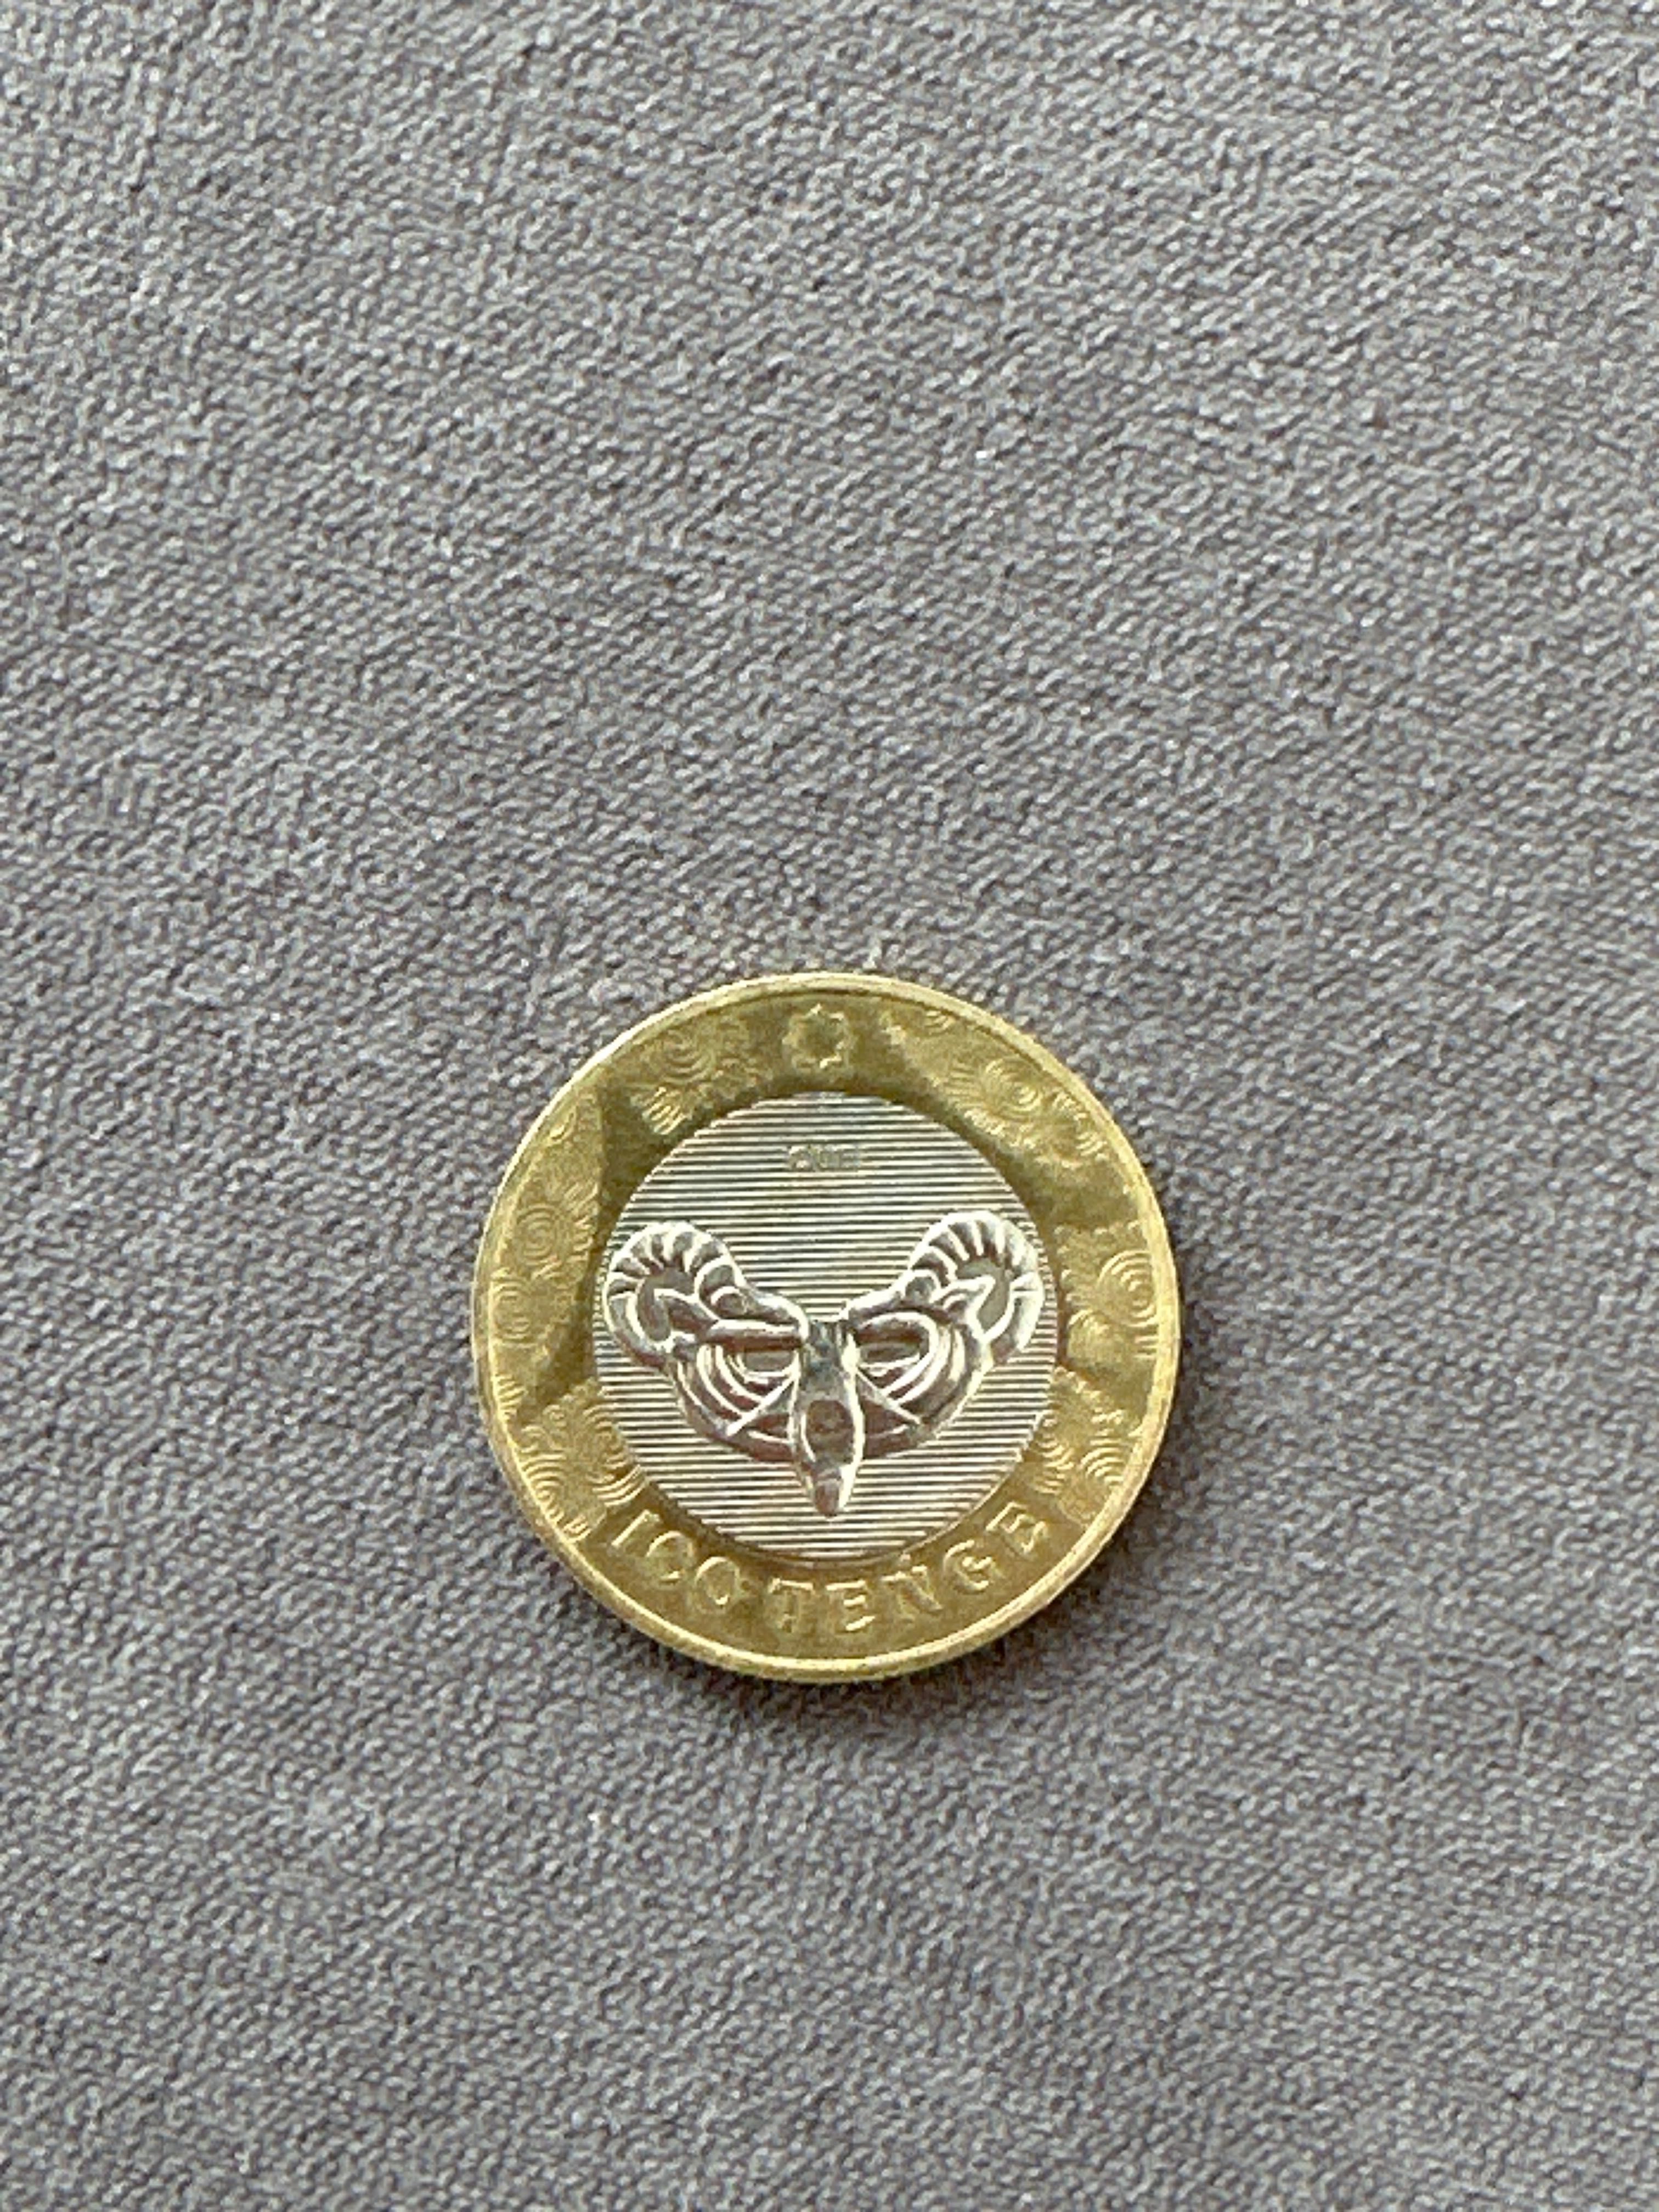 Продам коллекционную монету сакского стиля 100 тенге